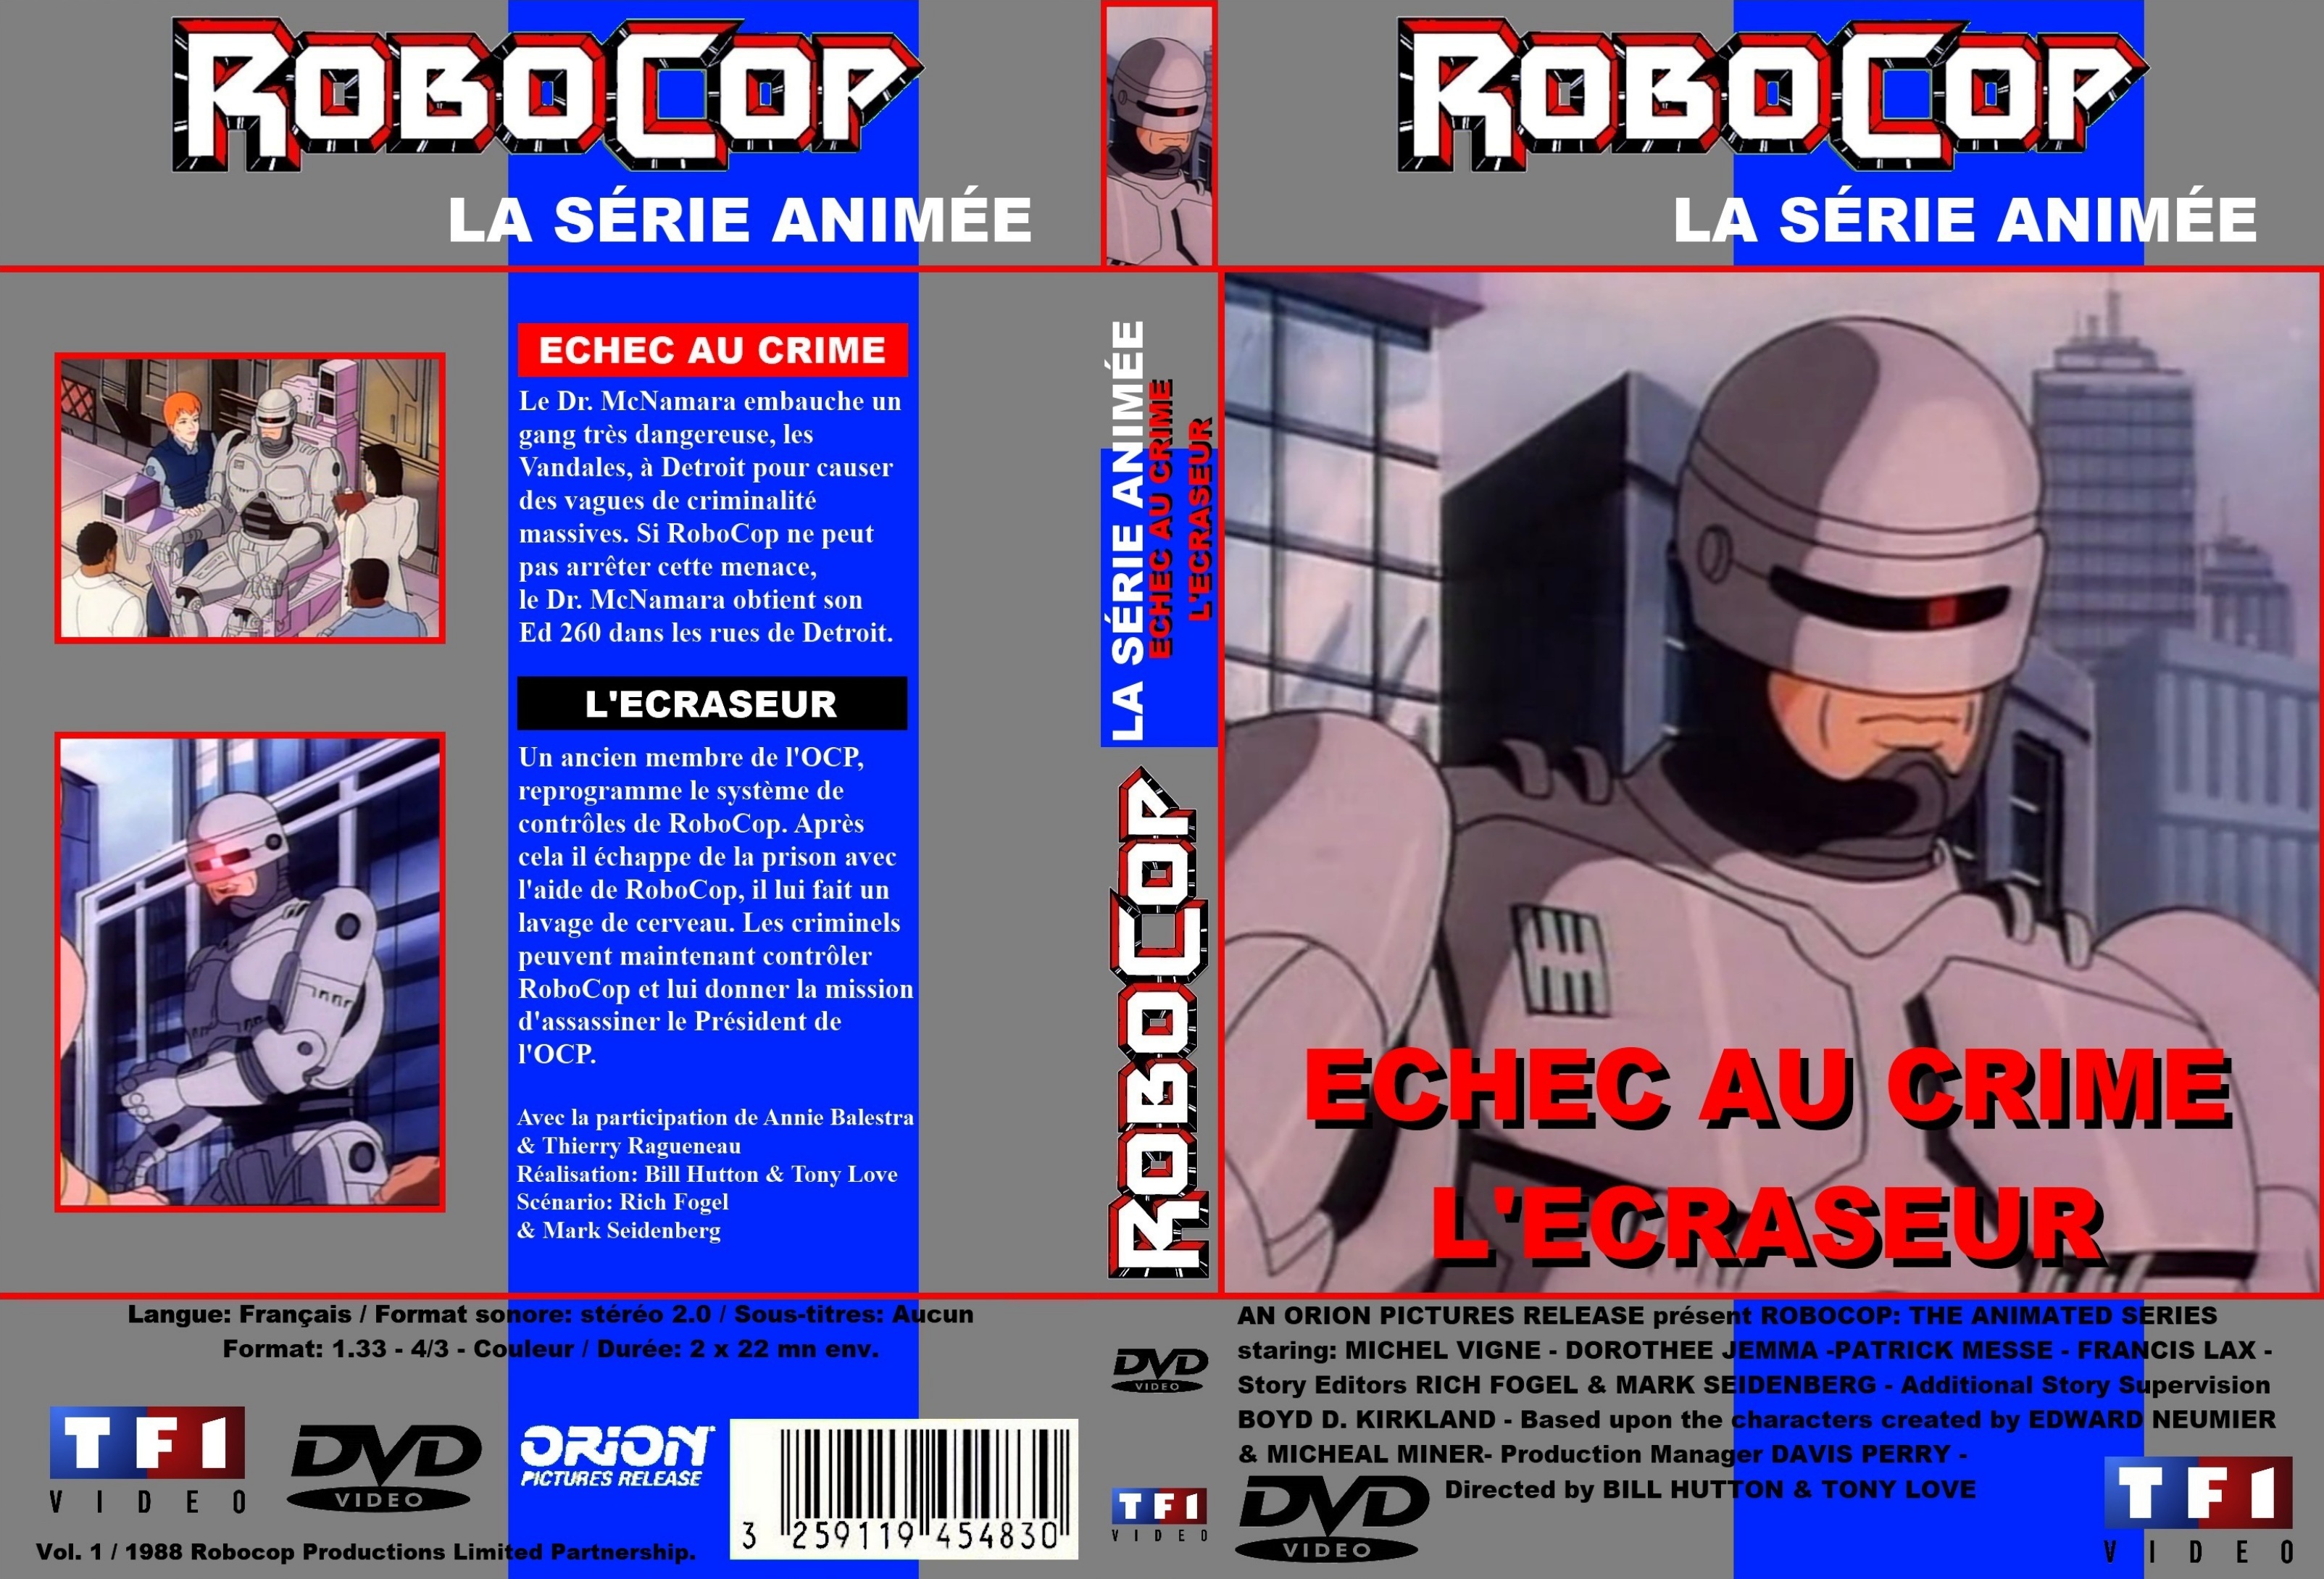 Jaquette DVD Robocop (Srie anime 1988) DVD 1 custom